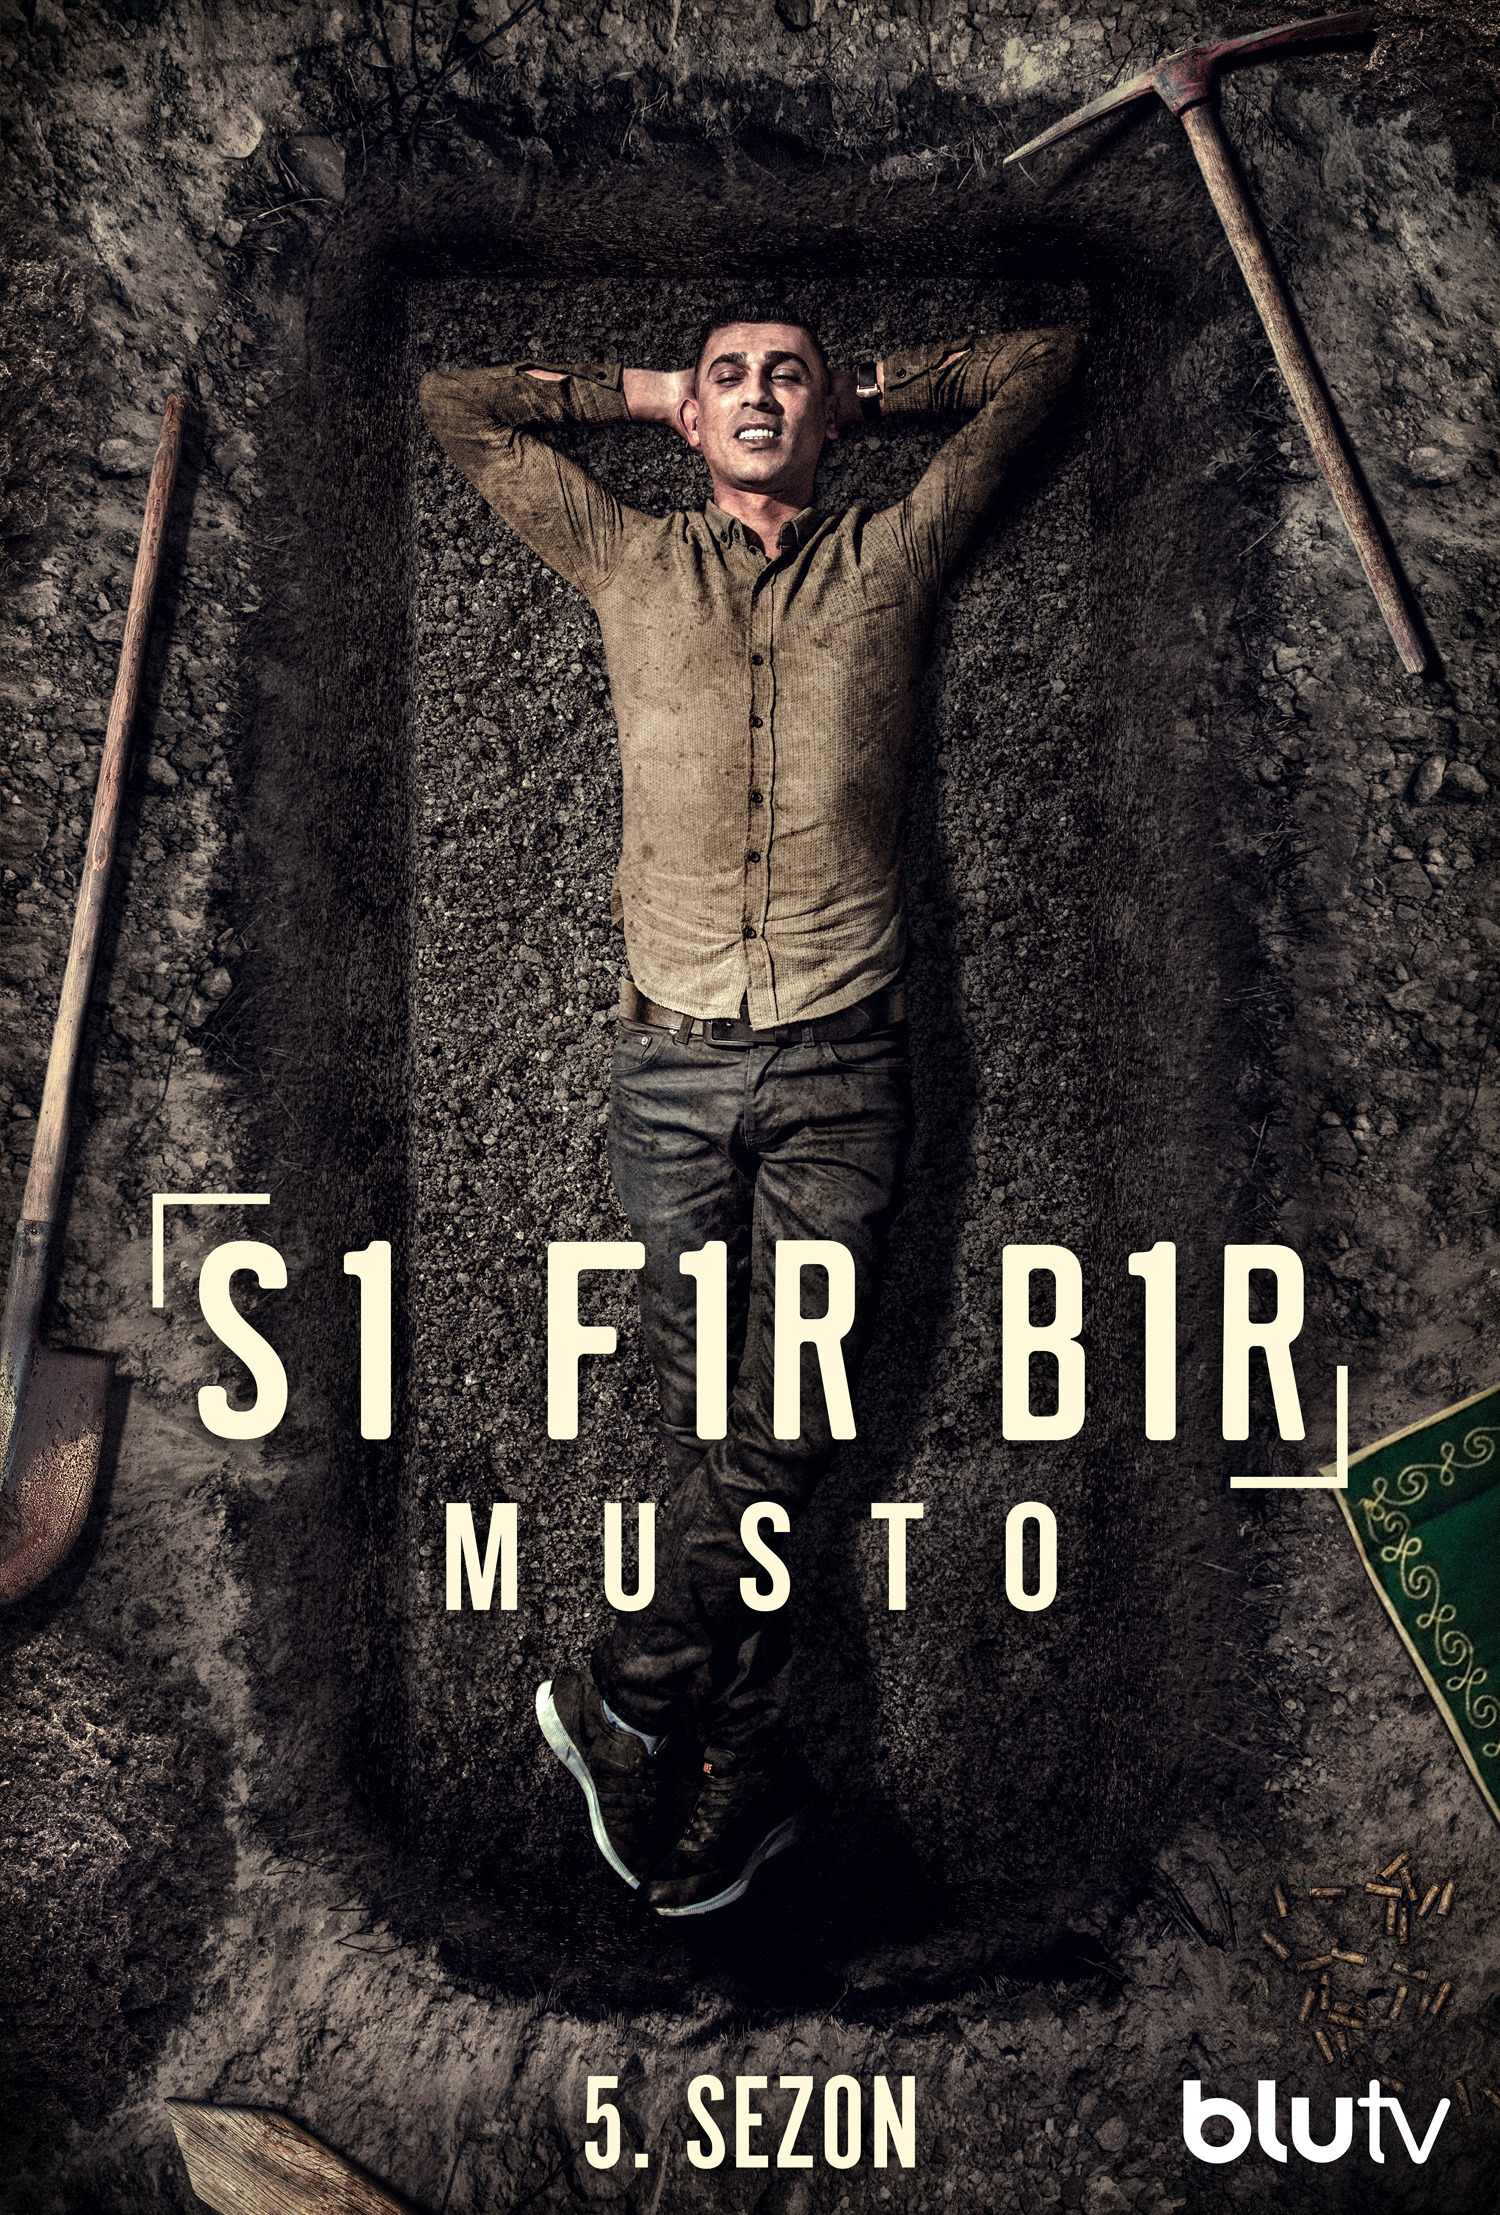 Mega Sized TV Poster Image for Sifir Bir (#16 of 23)